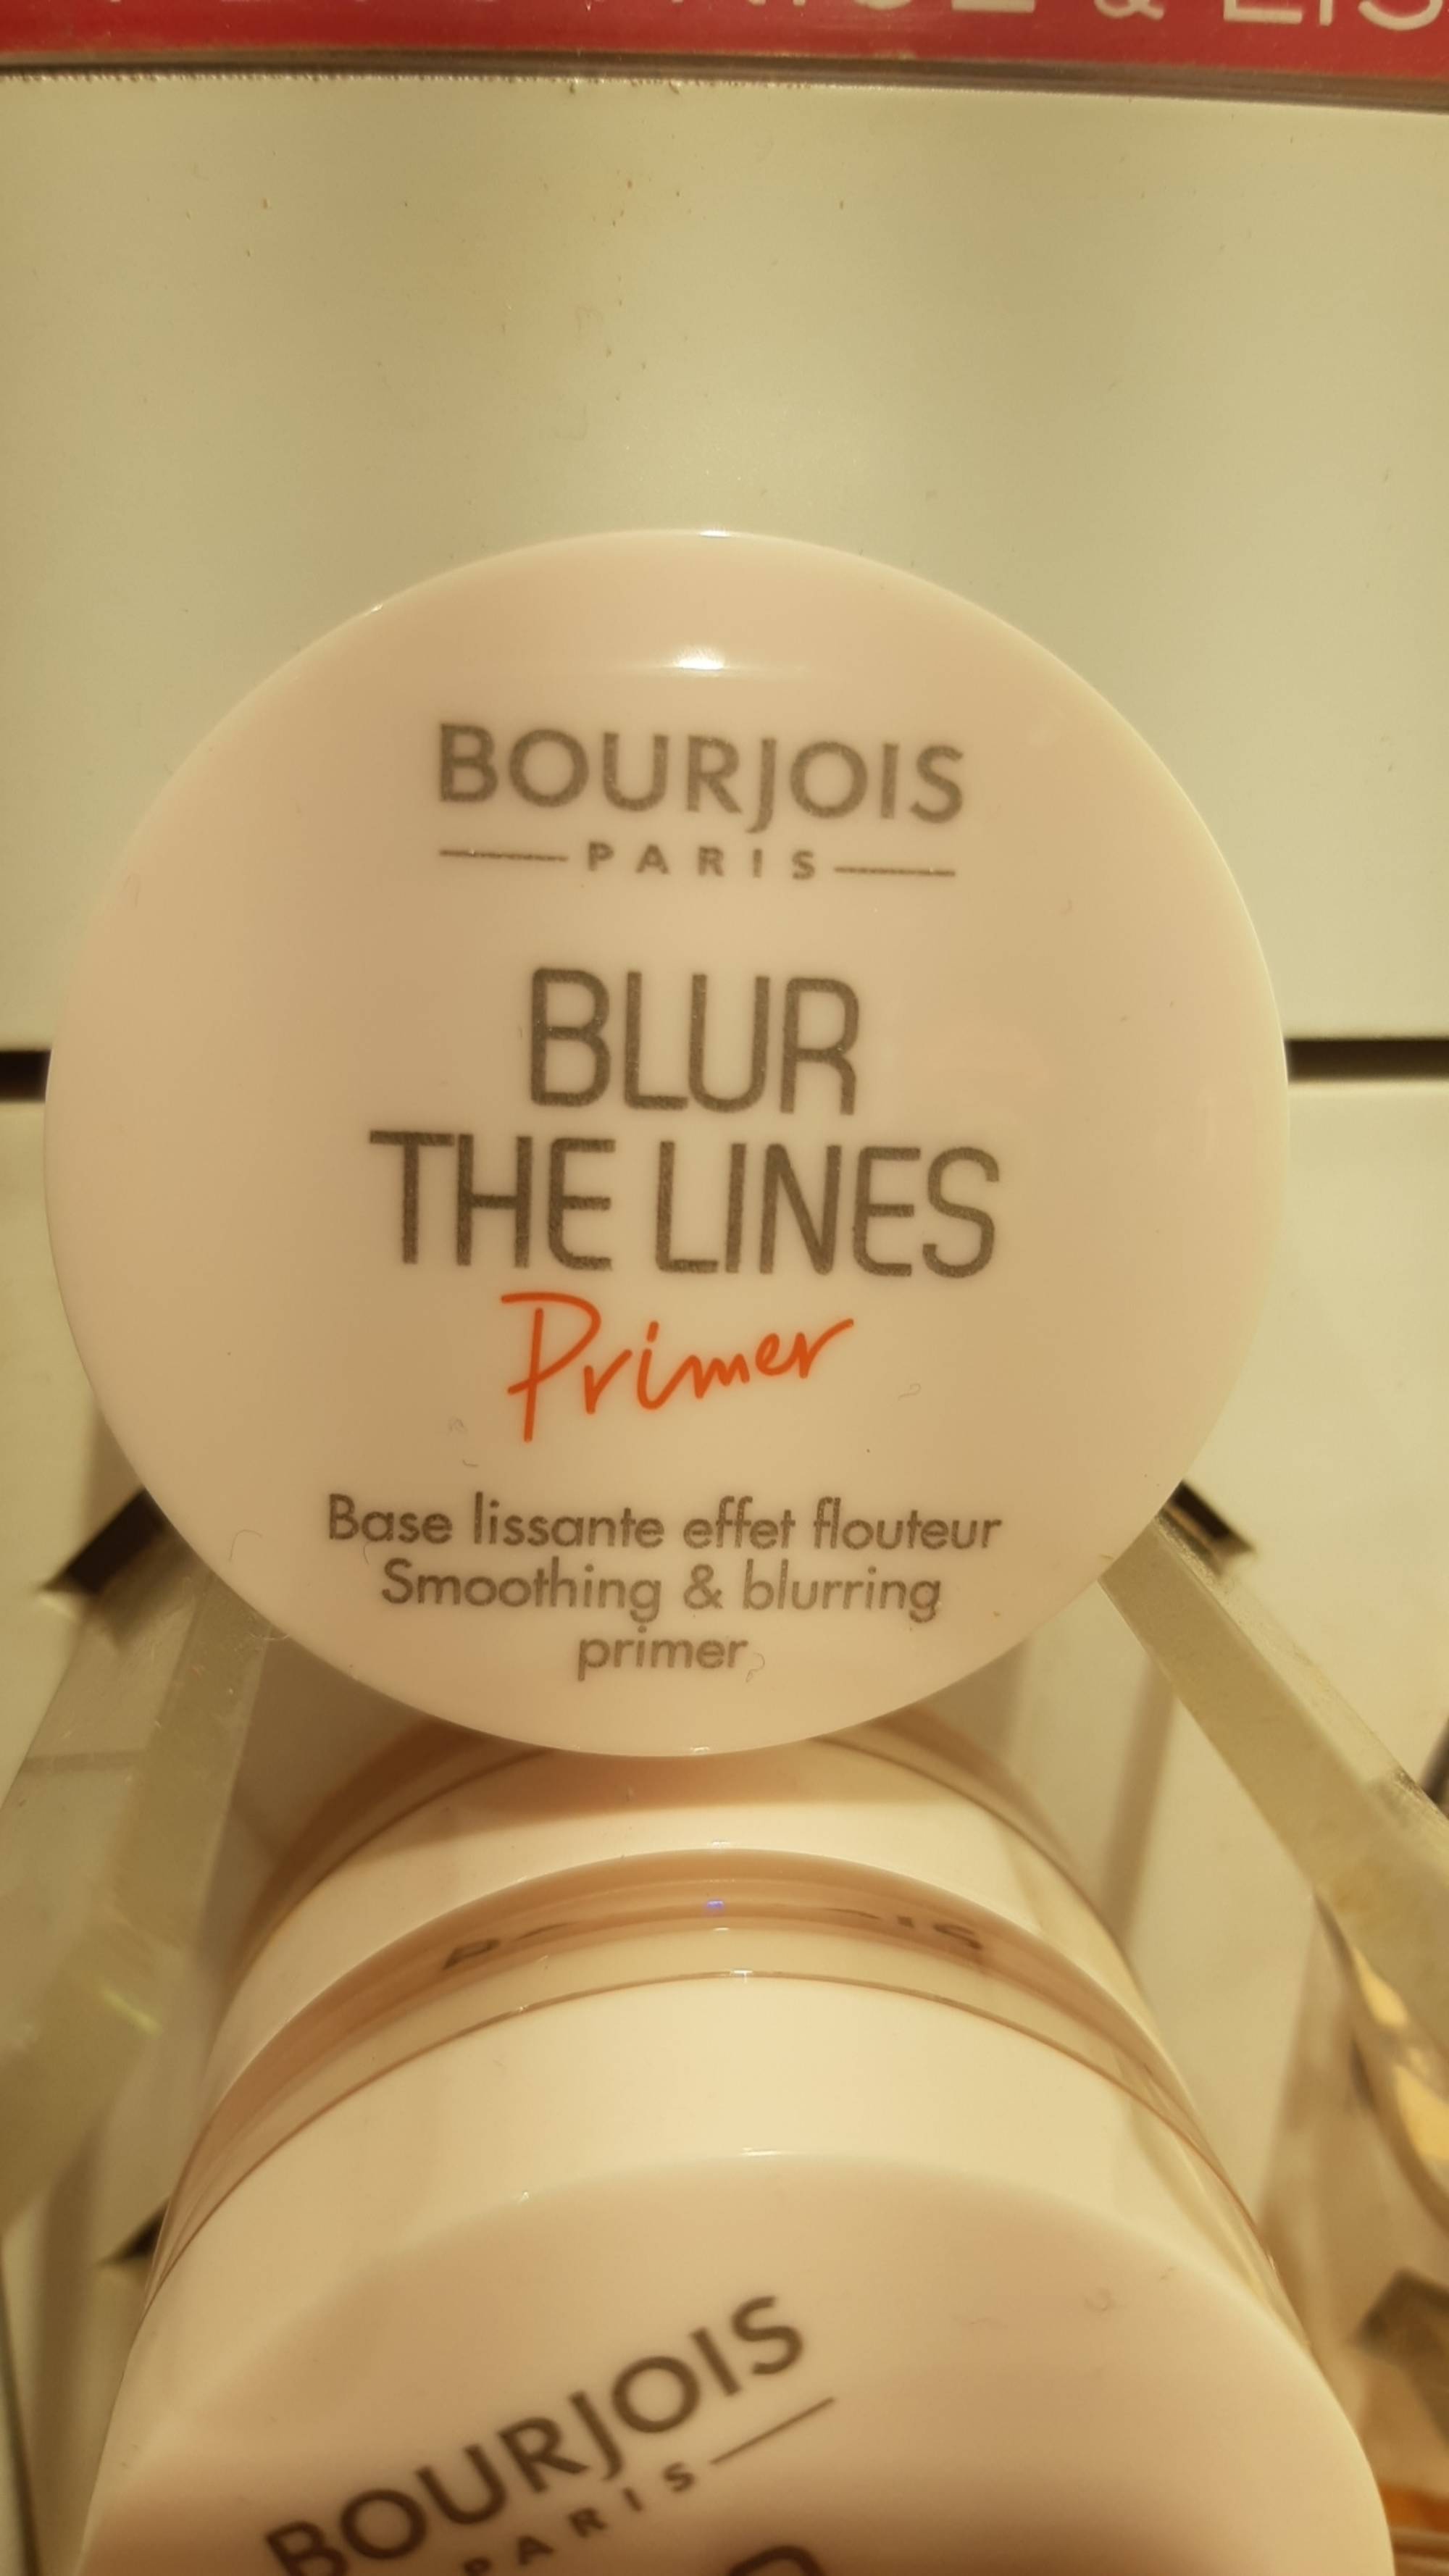 BOURJOIS - Blur the lines primer - Base lissante effet flouteur